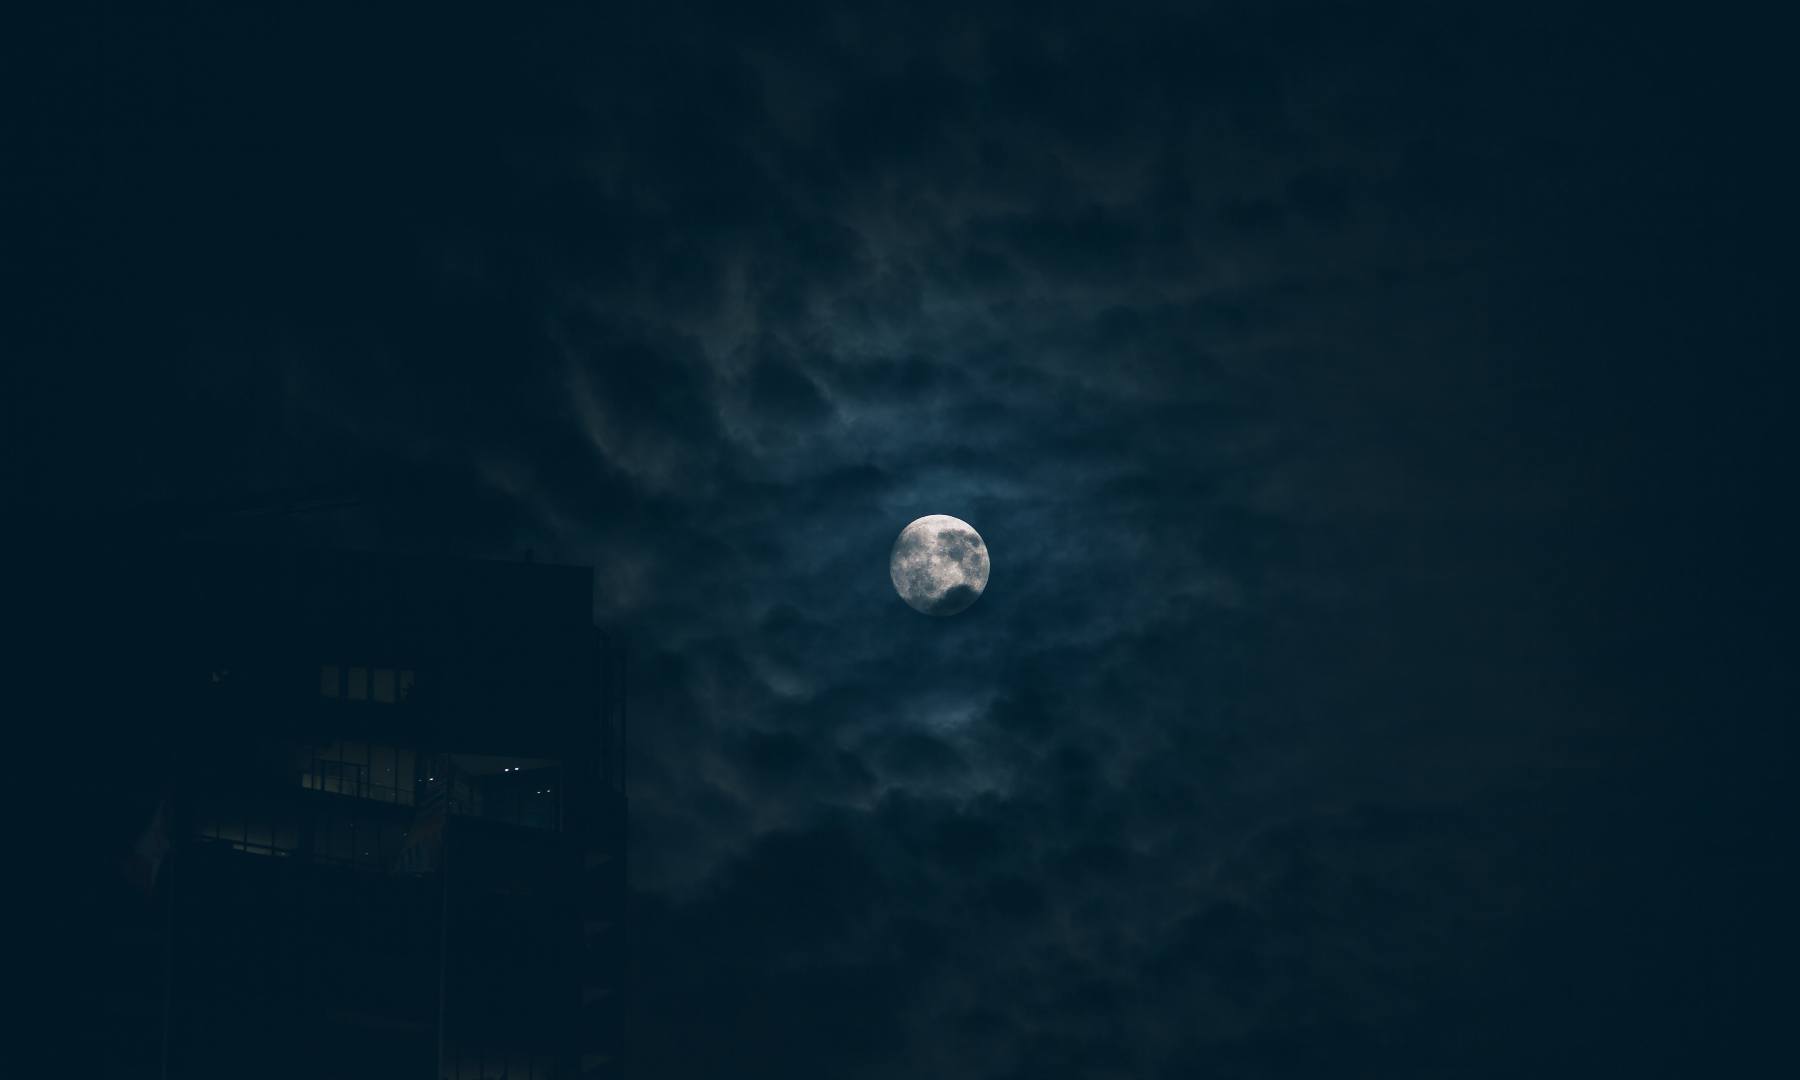 Cómo utilizar la luz de luna llena en fotografía nocturna